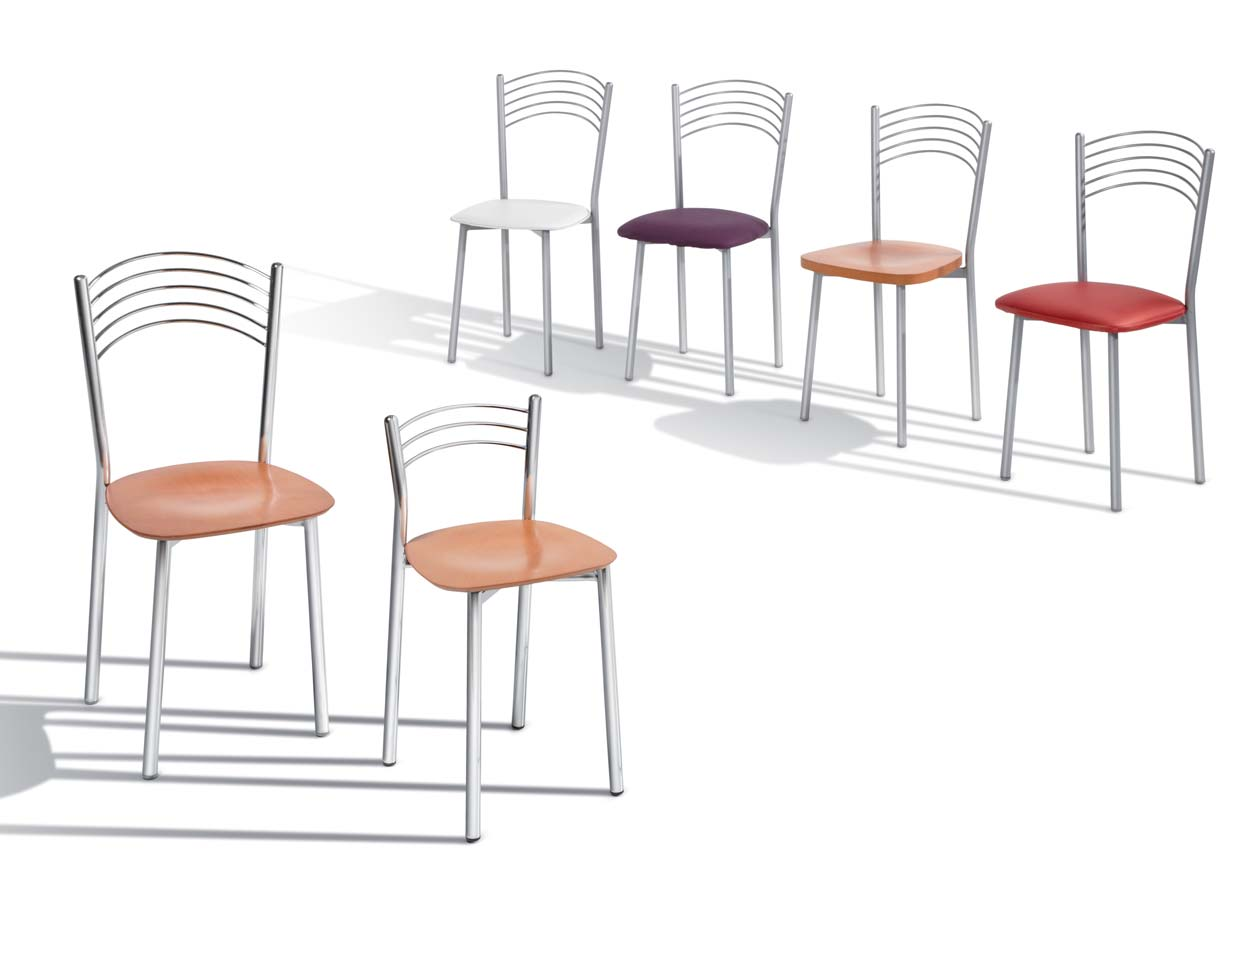 teide colección compuesta por silla y banqueta baja con respaldo tubo redondo color